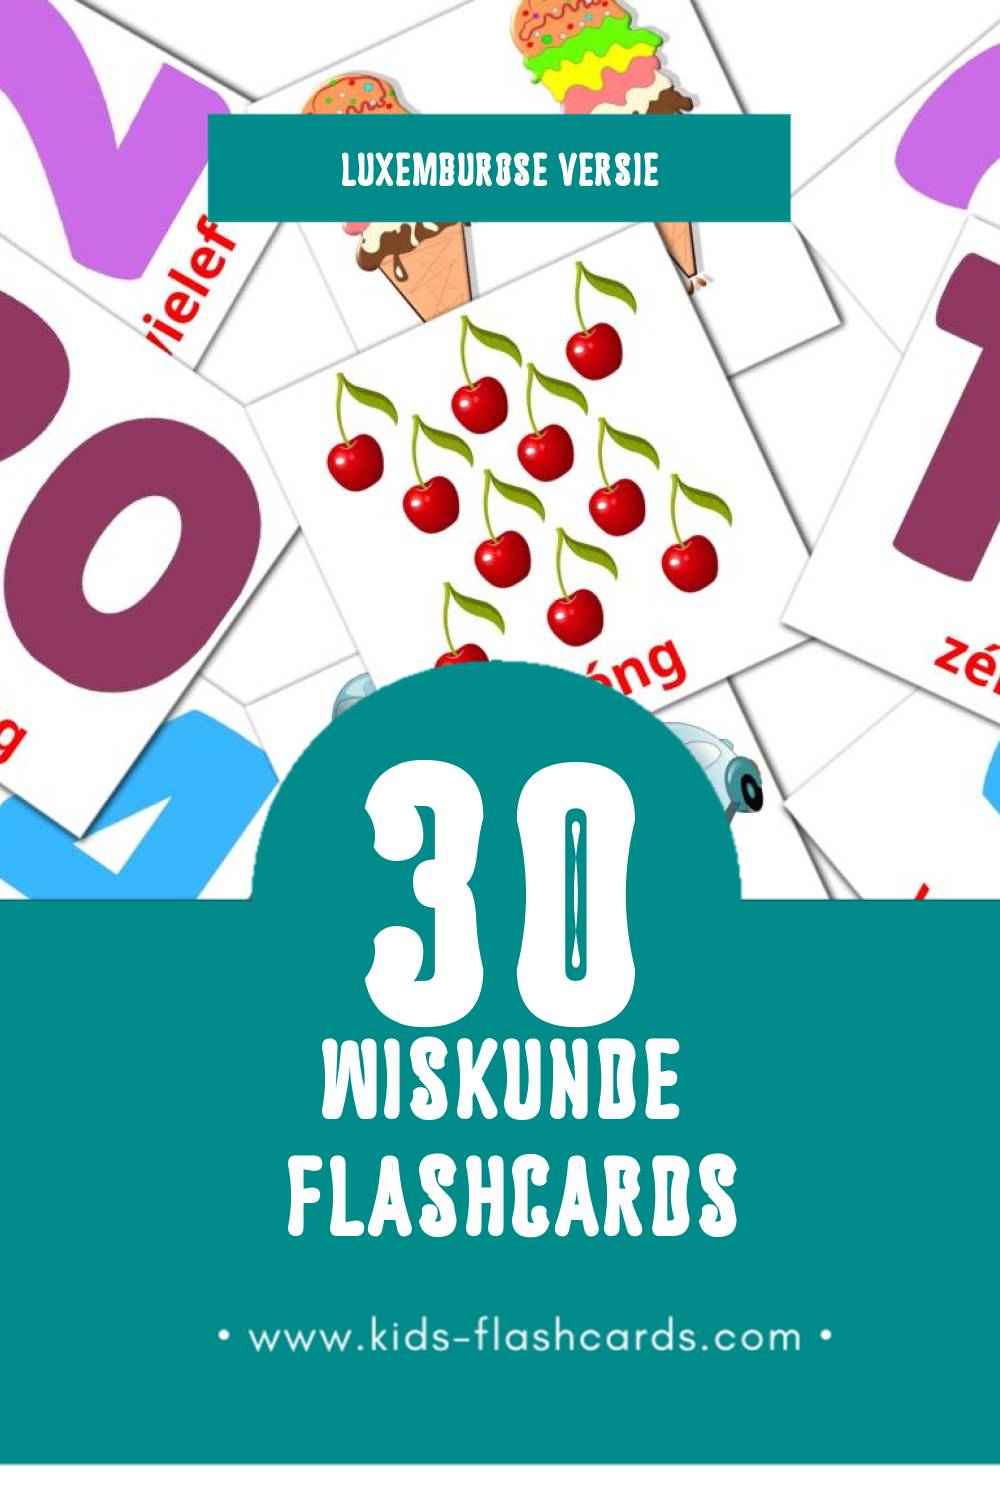 Visuele Mathematik Flashcards voor Kleuters (30 kaarten in het Luxemburgs)